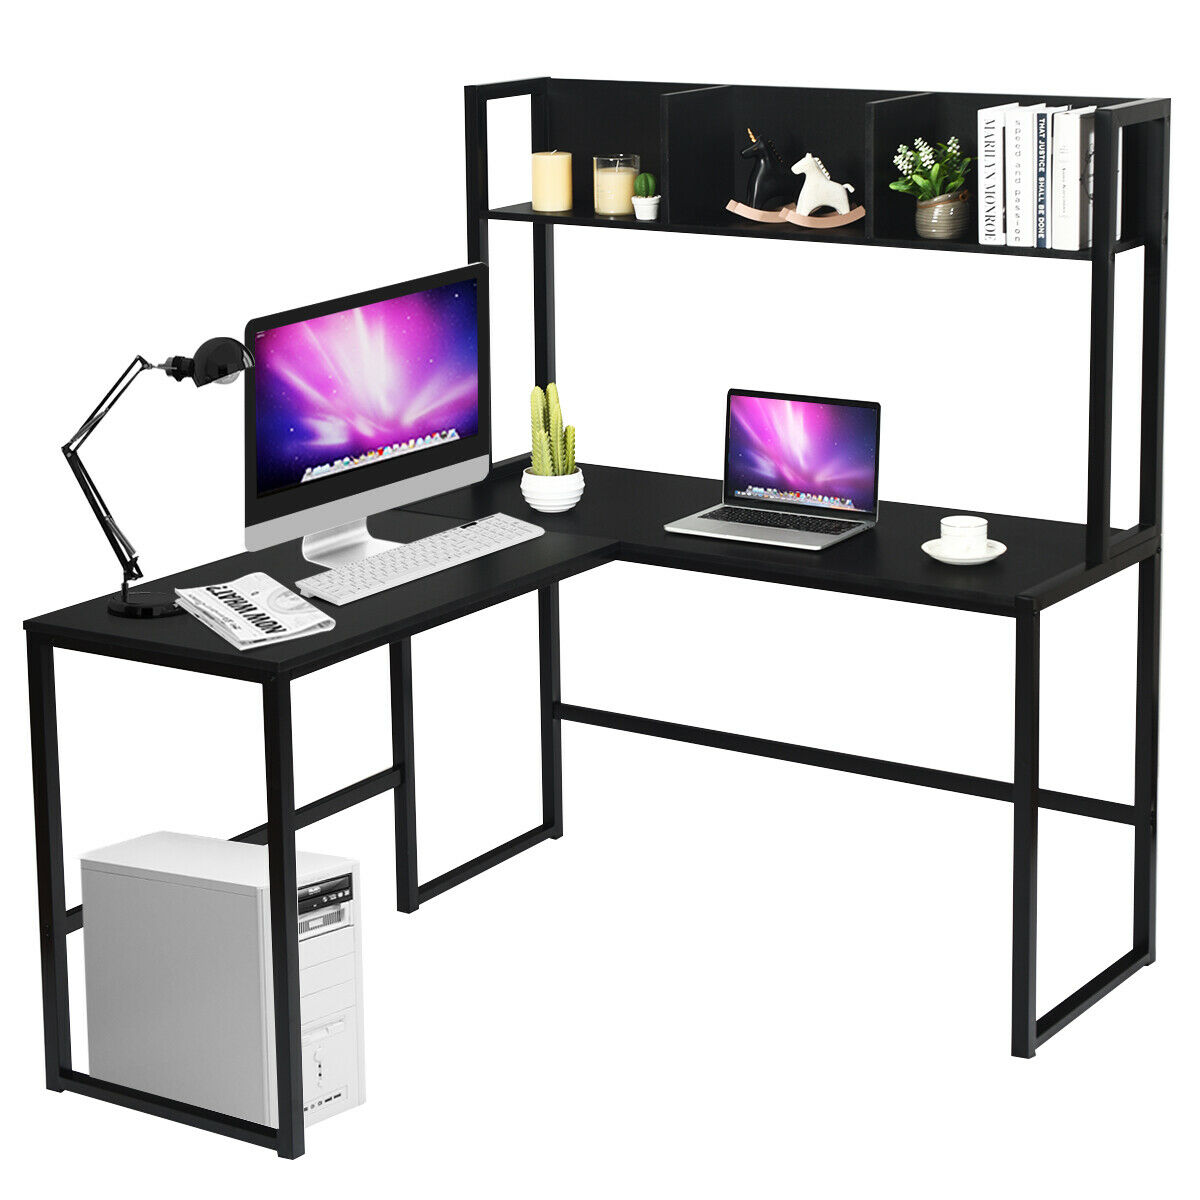 55" L-Shaped Desk Corner Computer Desk Writing Workstation Table w/Hutch Black